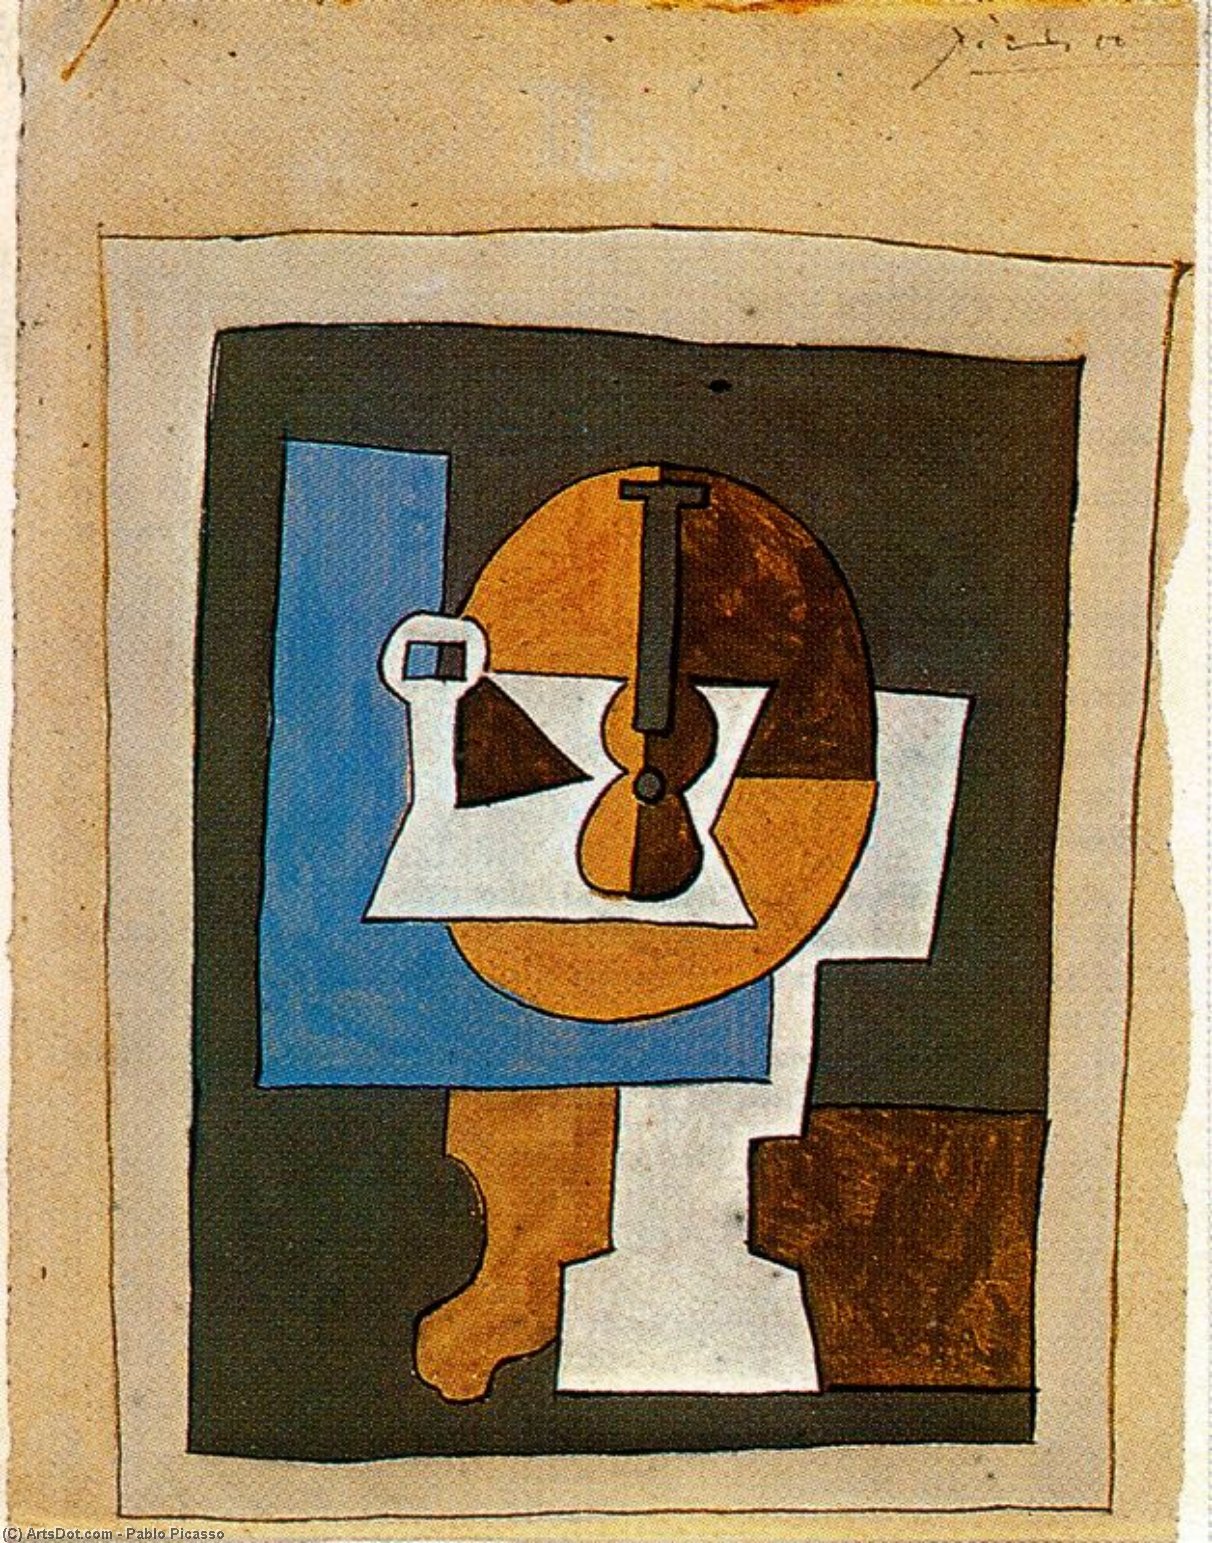 WikiOO.org - Encyclopedia of Fine Arts - Maleri, Artwork Pablo Picasso - Frutero y guitarra